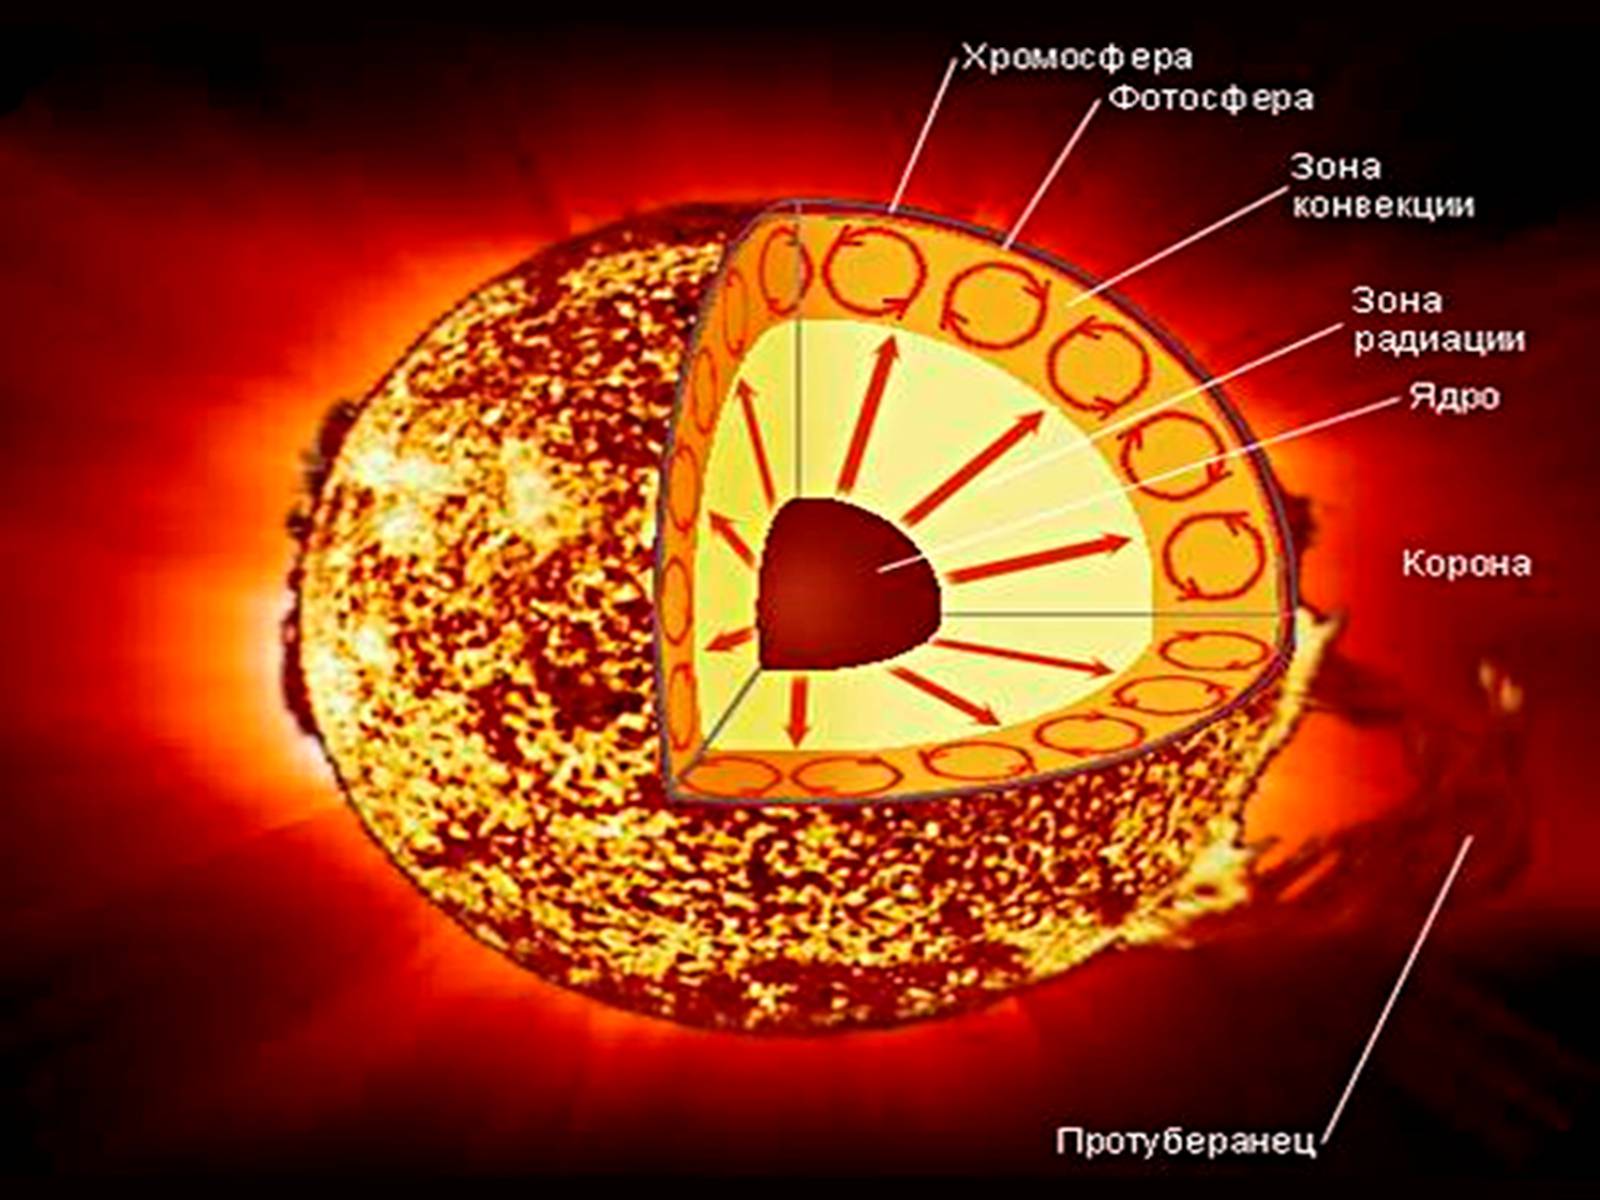 Элементы составляющие атмосферы солнца. Строение атмосферы солнца Фотосфера хромосфера Солнечная корона. Строение солнца хромосфера Фотосфера. Внутреннее строение солнца Фотосфера. Строение солнца схема.